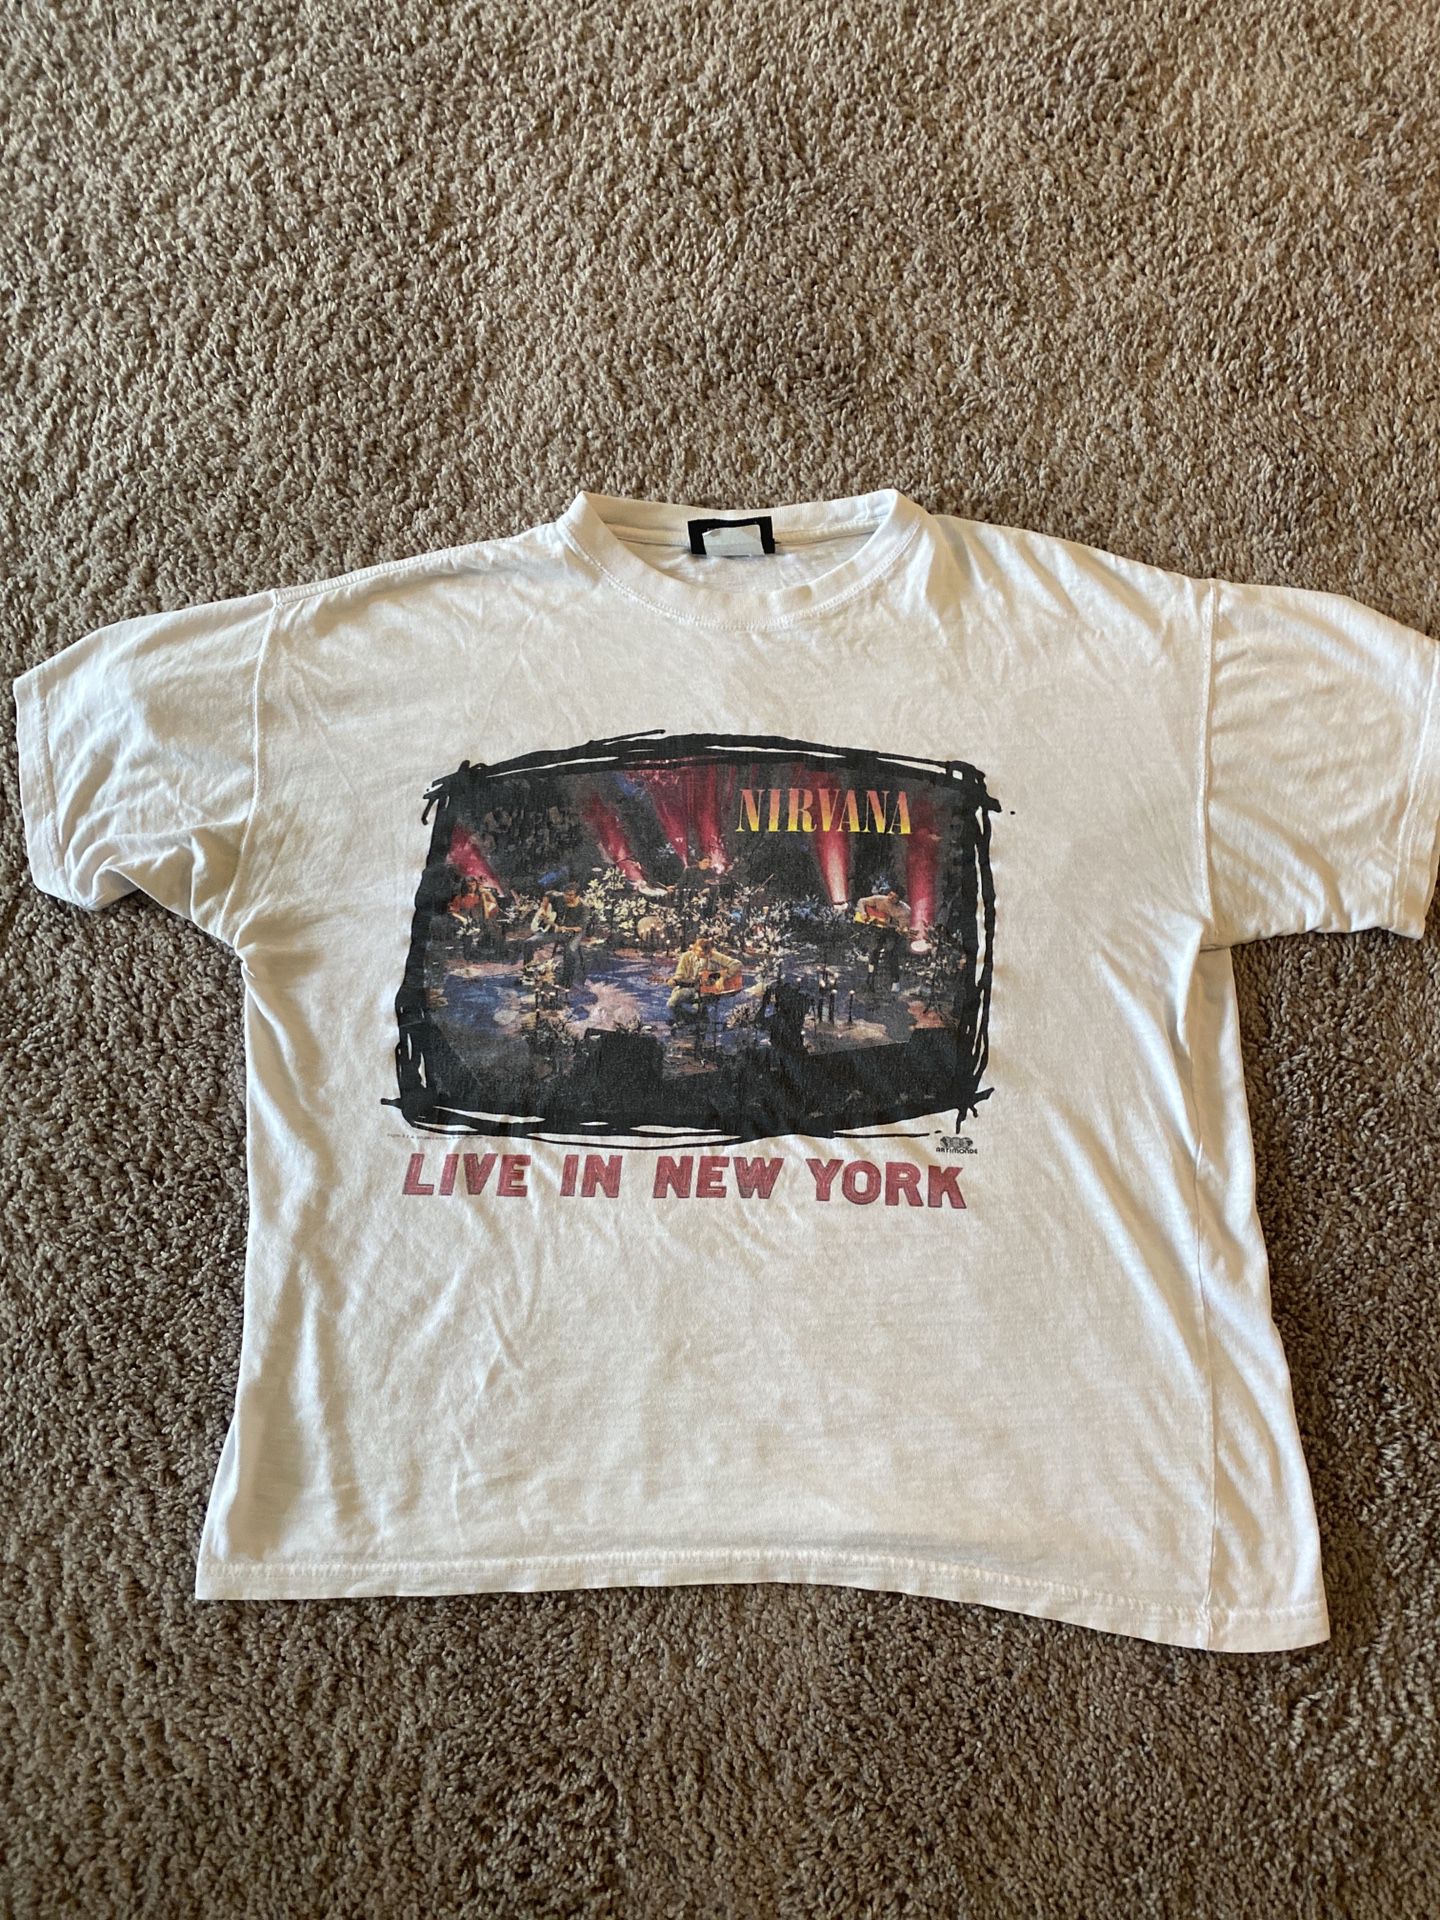 Vintage Nirvana Shirt Size Xl